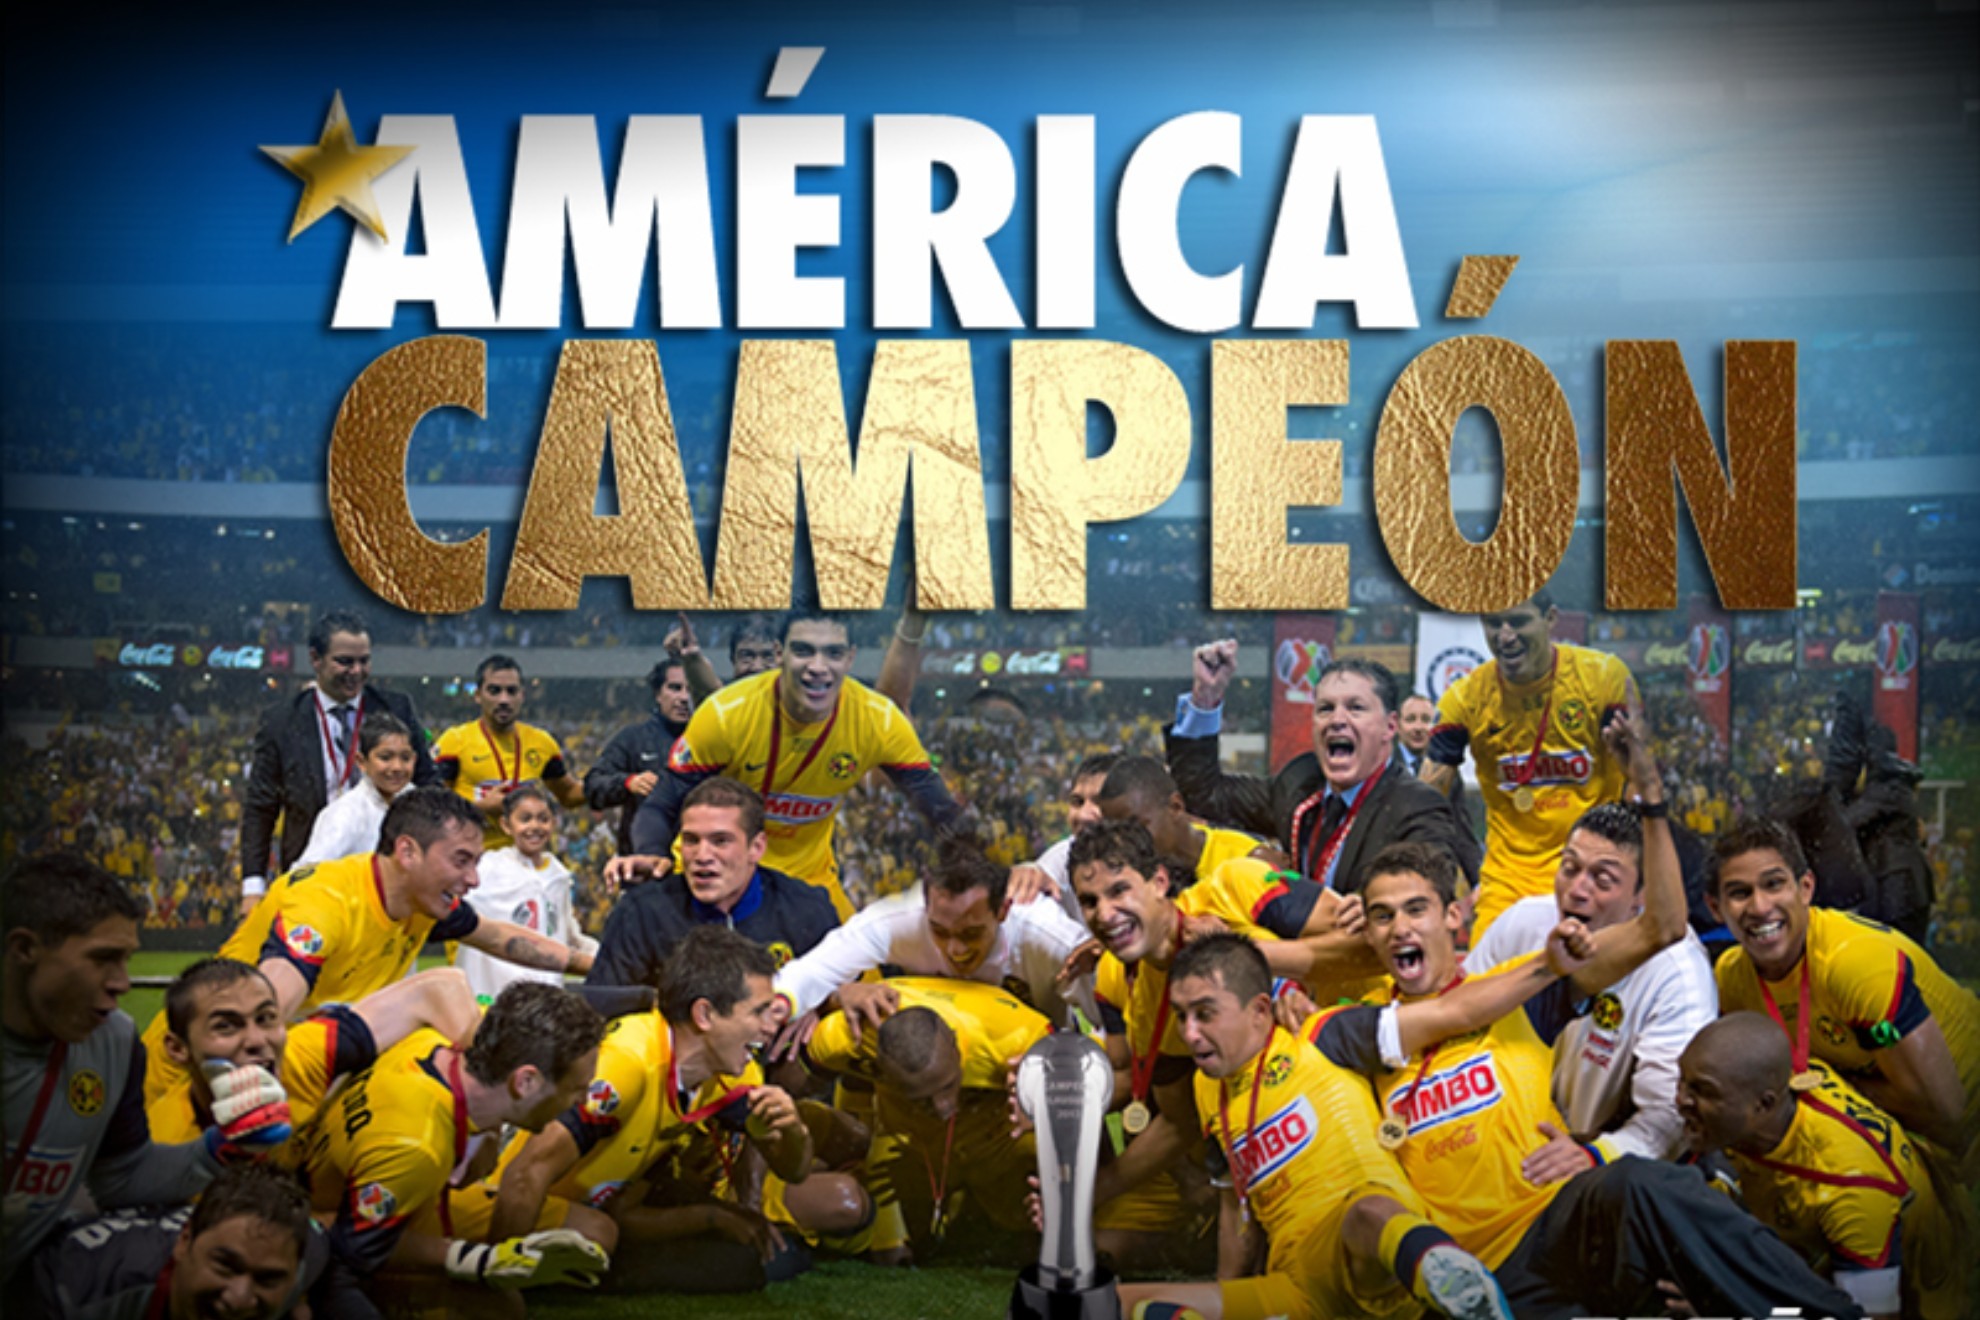 Club América: ¿Cuántos títulos oficiales tiene?